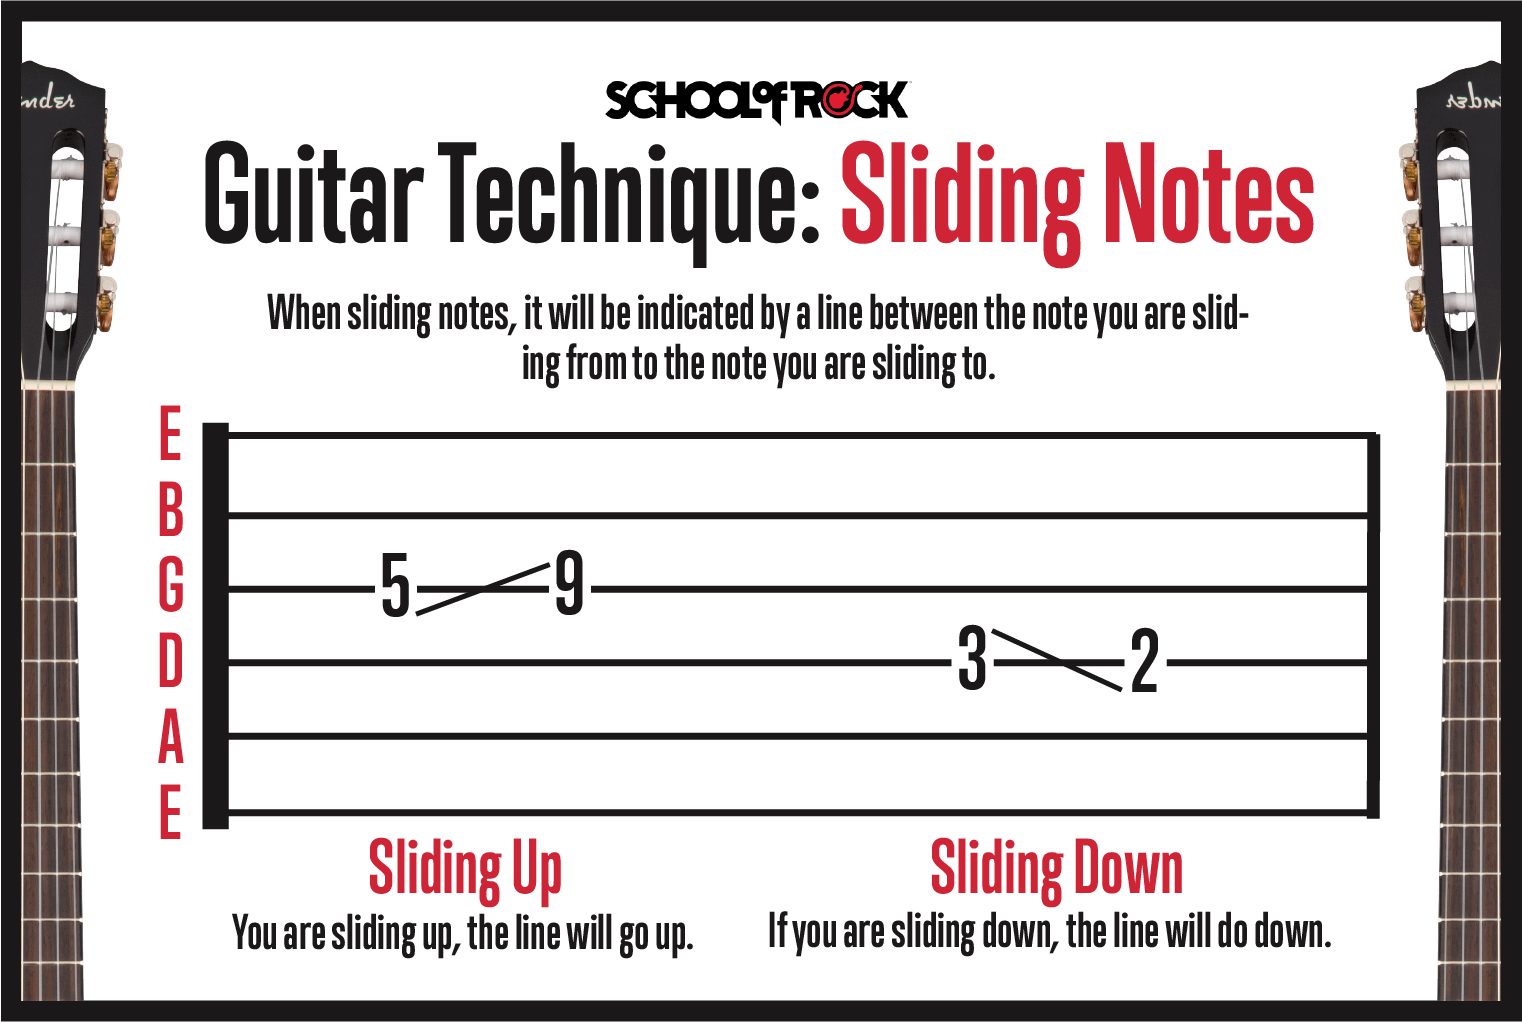 Guitar technique sliding notes